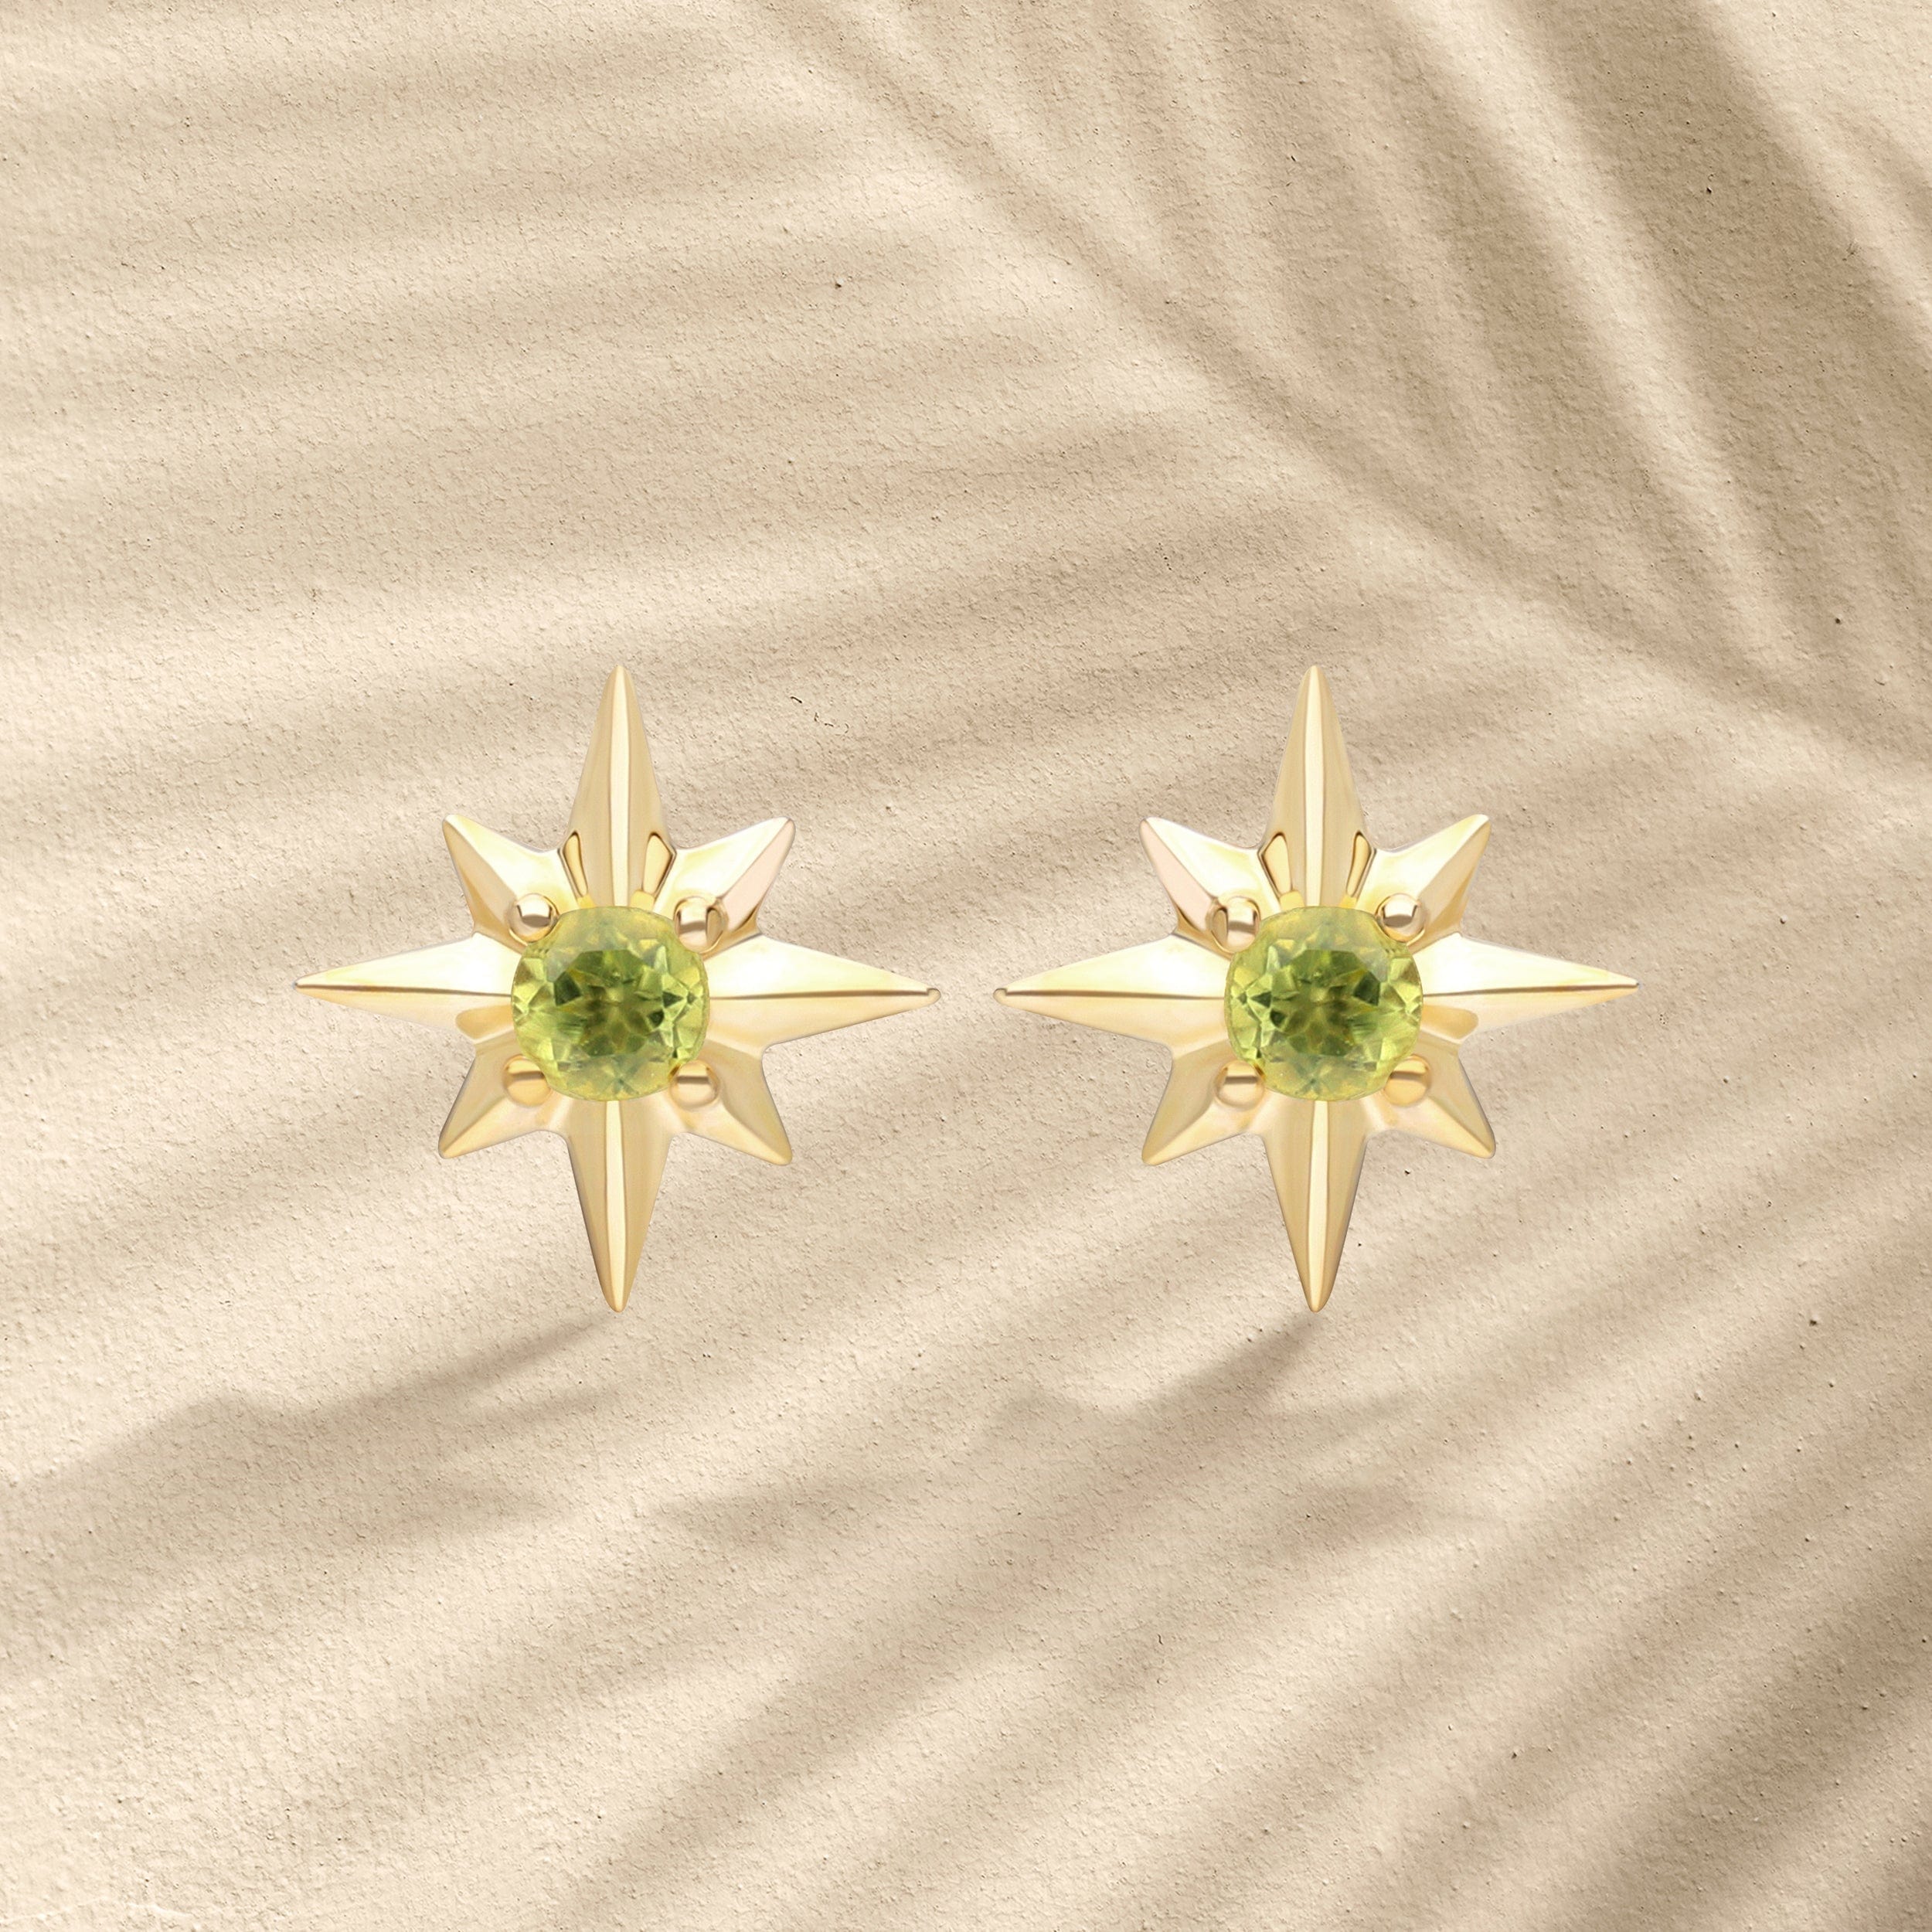 Night Sky Peridot Star Stud Earrings in 9ct Yellow Gold